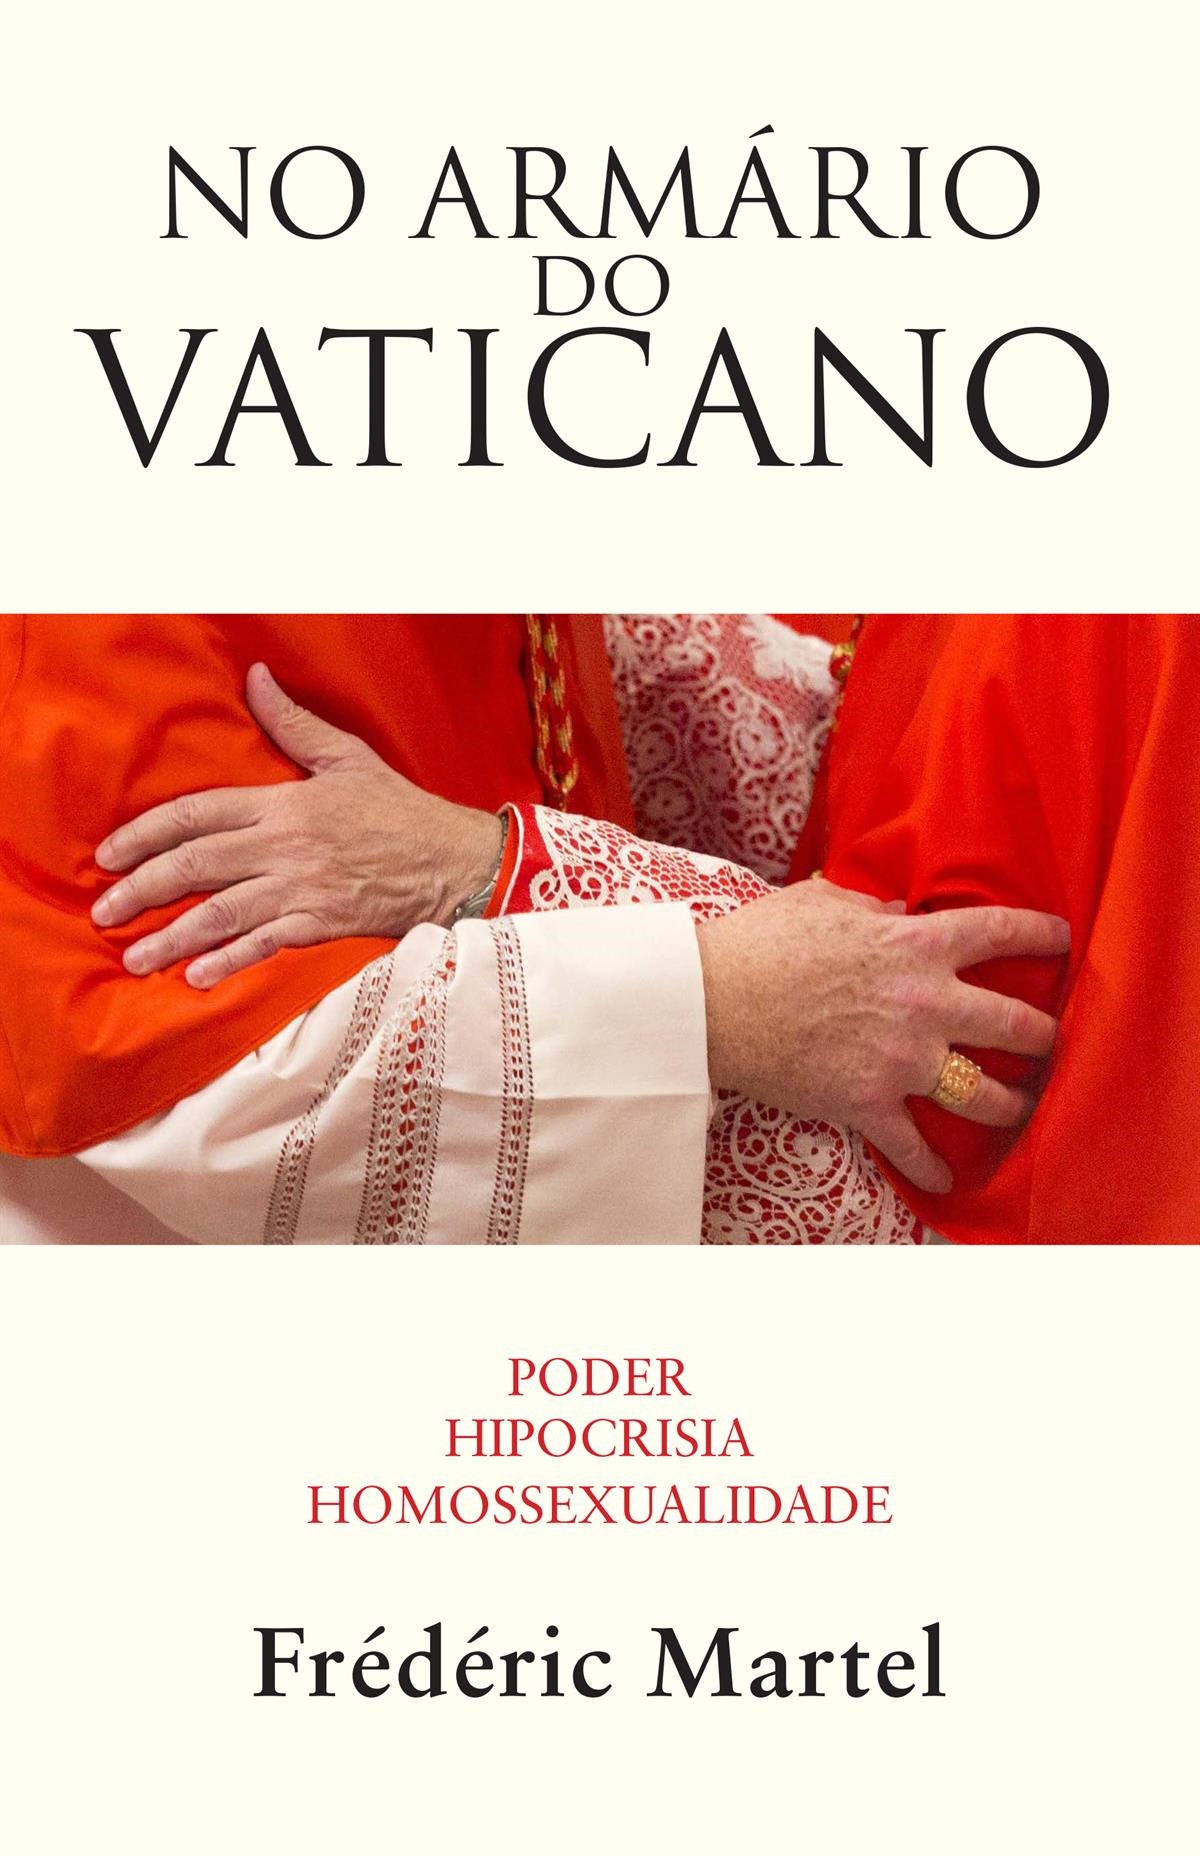 Livro No Armário do Vaticano fala sobre padres gays